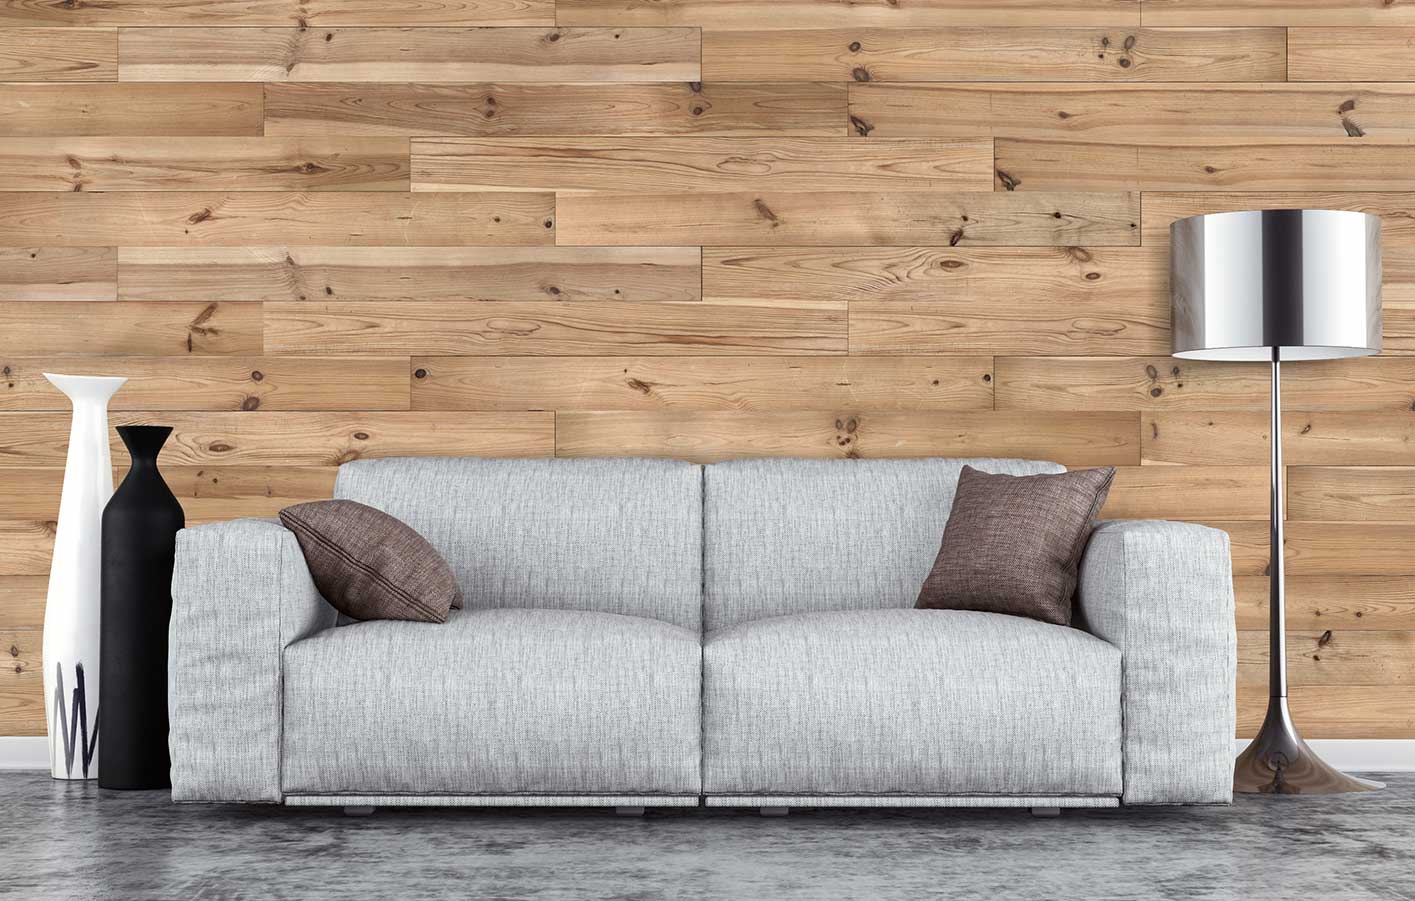 Eine Couch vor einer Wand aus Holzpaneelen